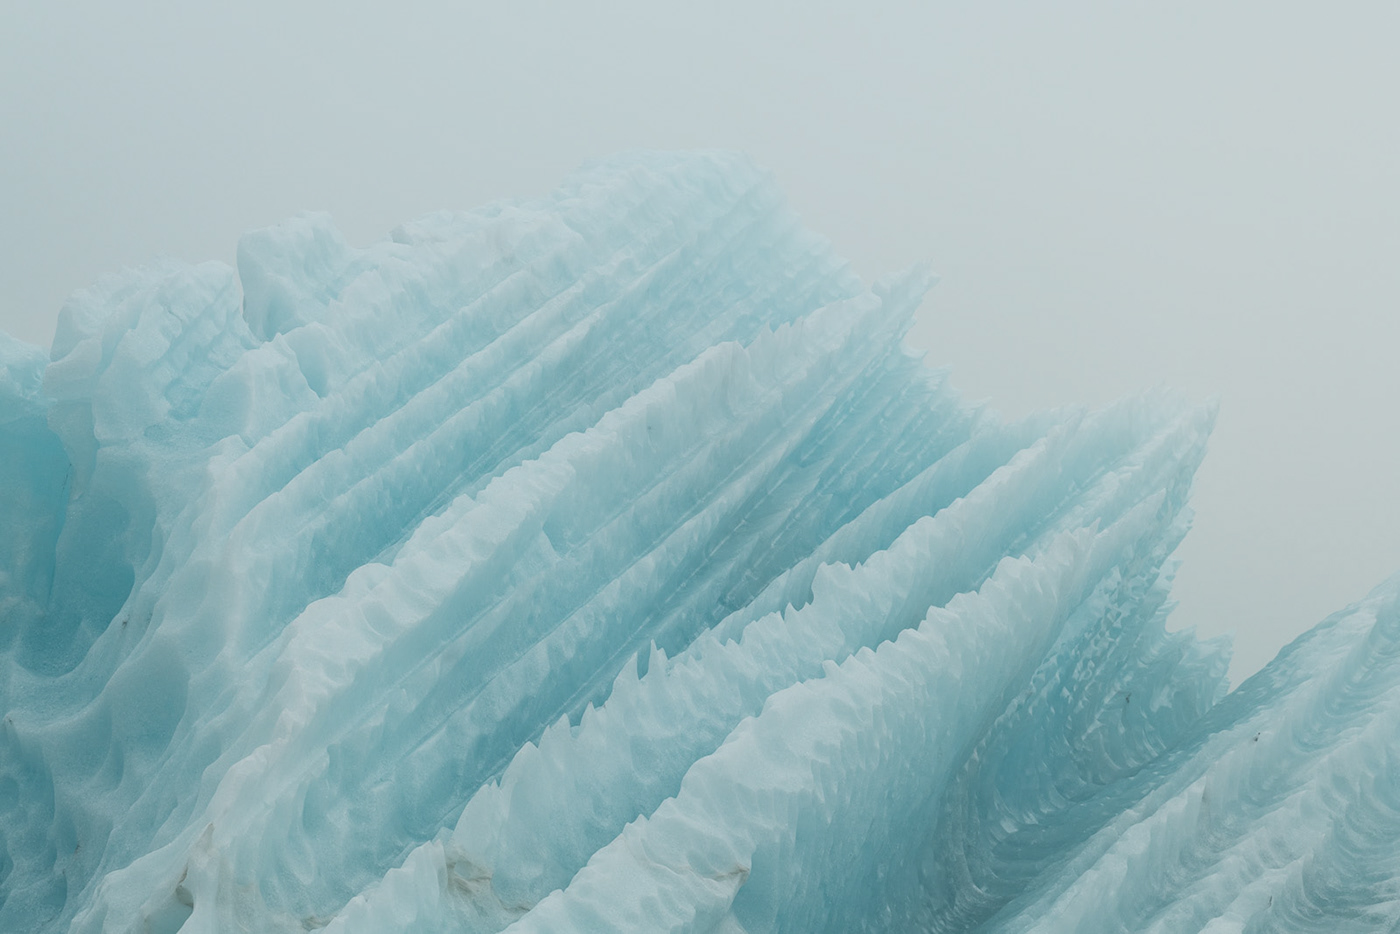 iceland Arctic light fog ice iceberg climate change landscape photography water Landscape